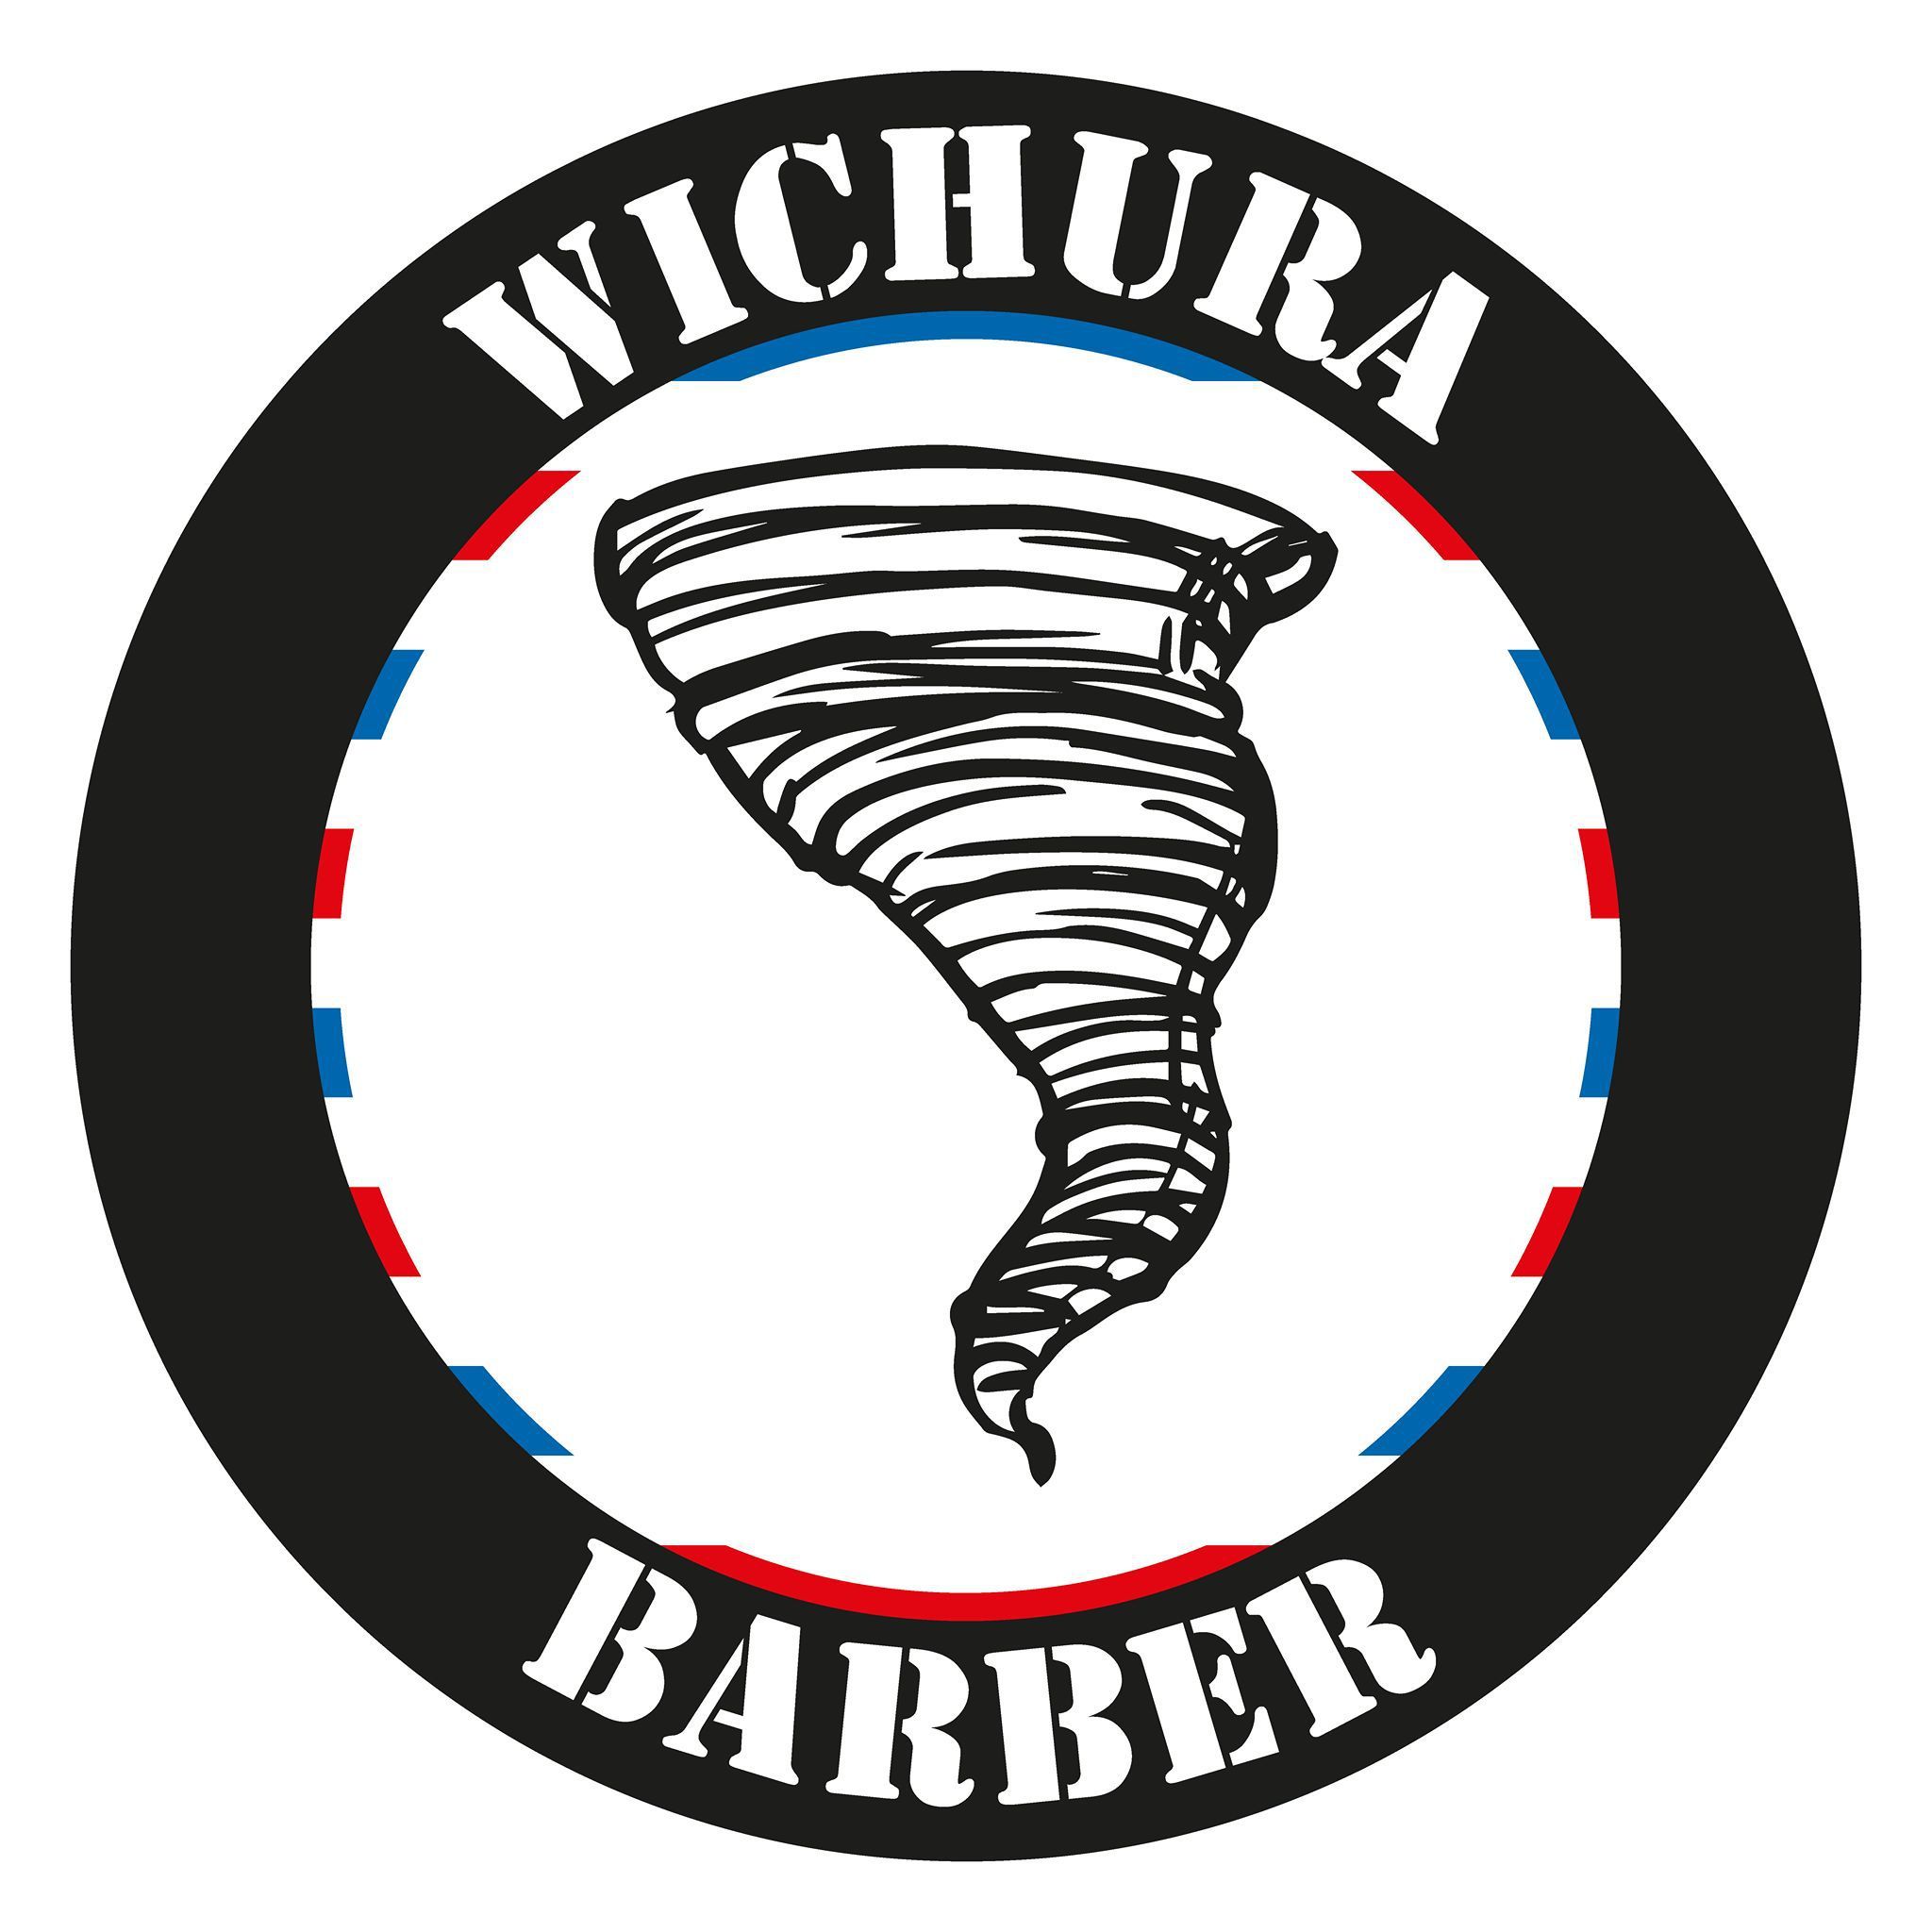 Wichura Barber, Prosta 9, 87-100, Toruń